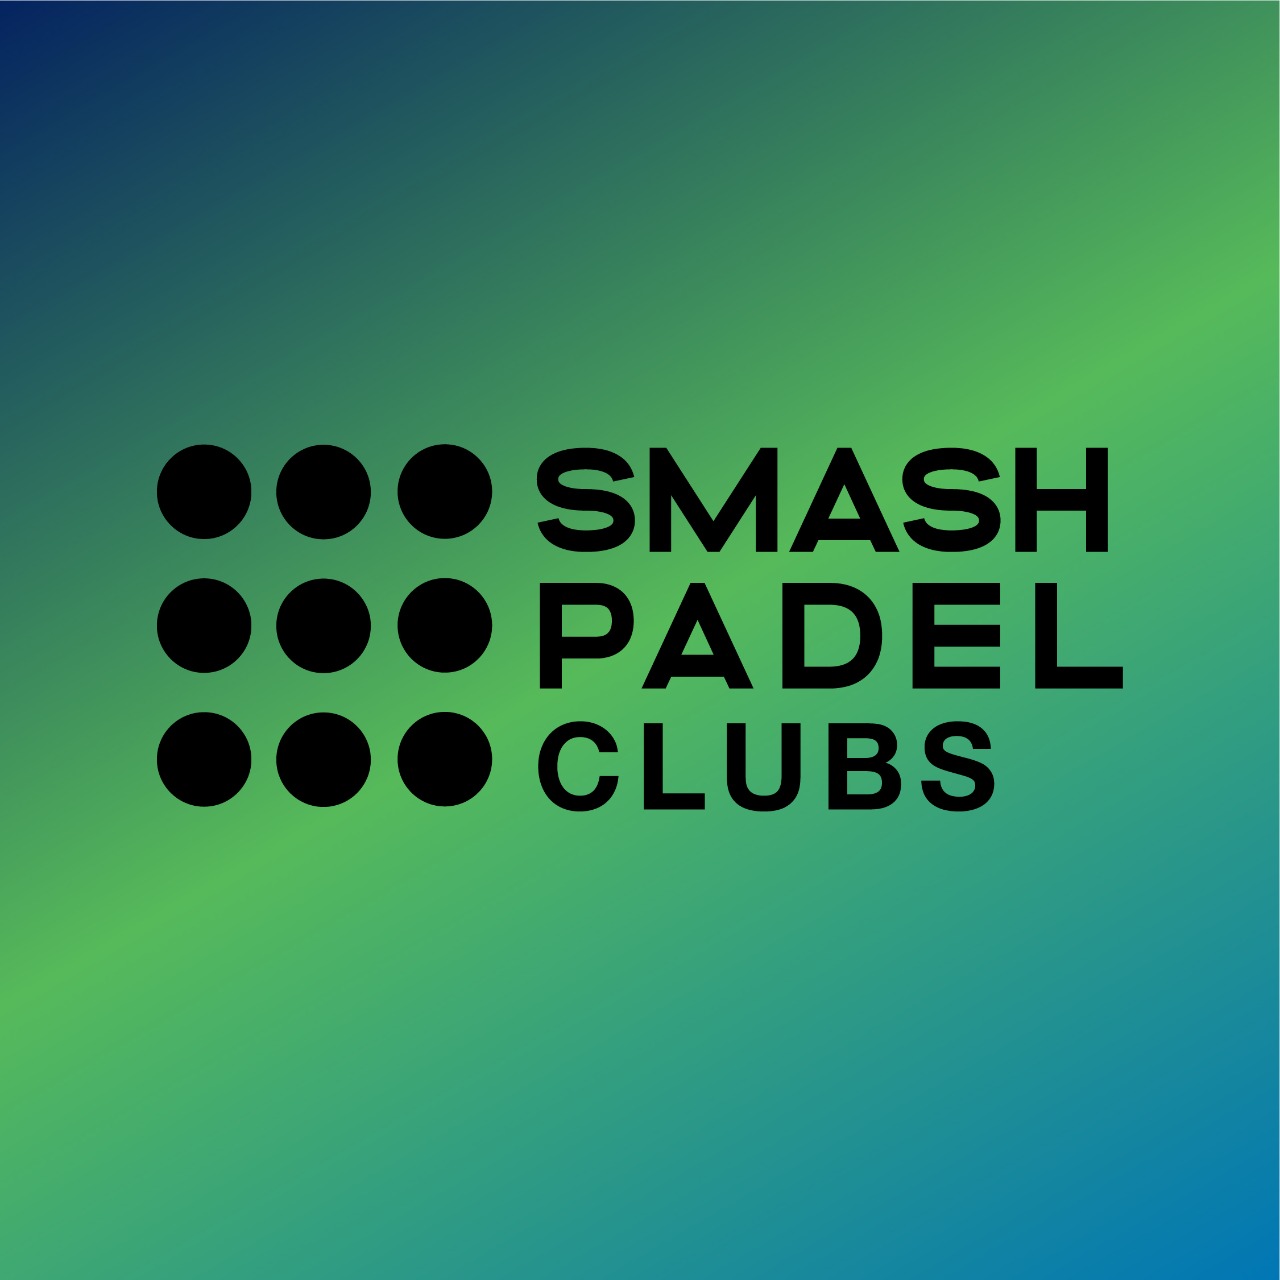 Smash Padel Clubs - Urban Sport Club Maroussi Kisisia Athens Greece